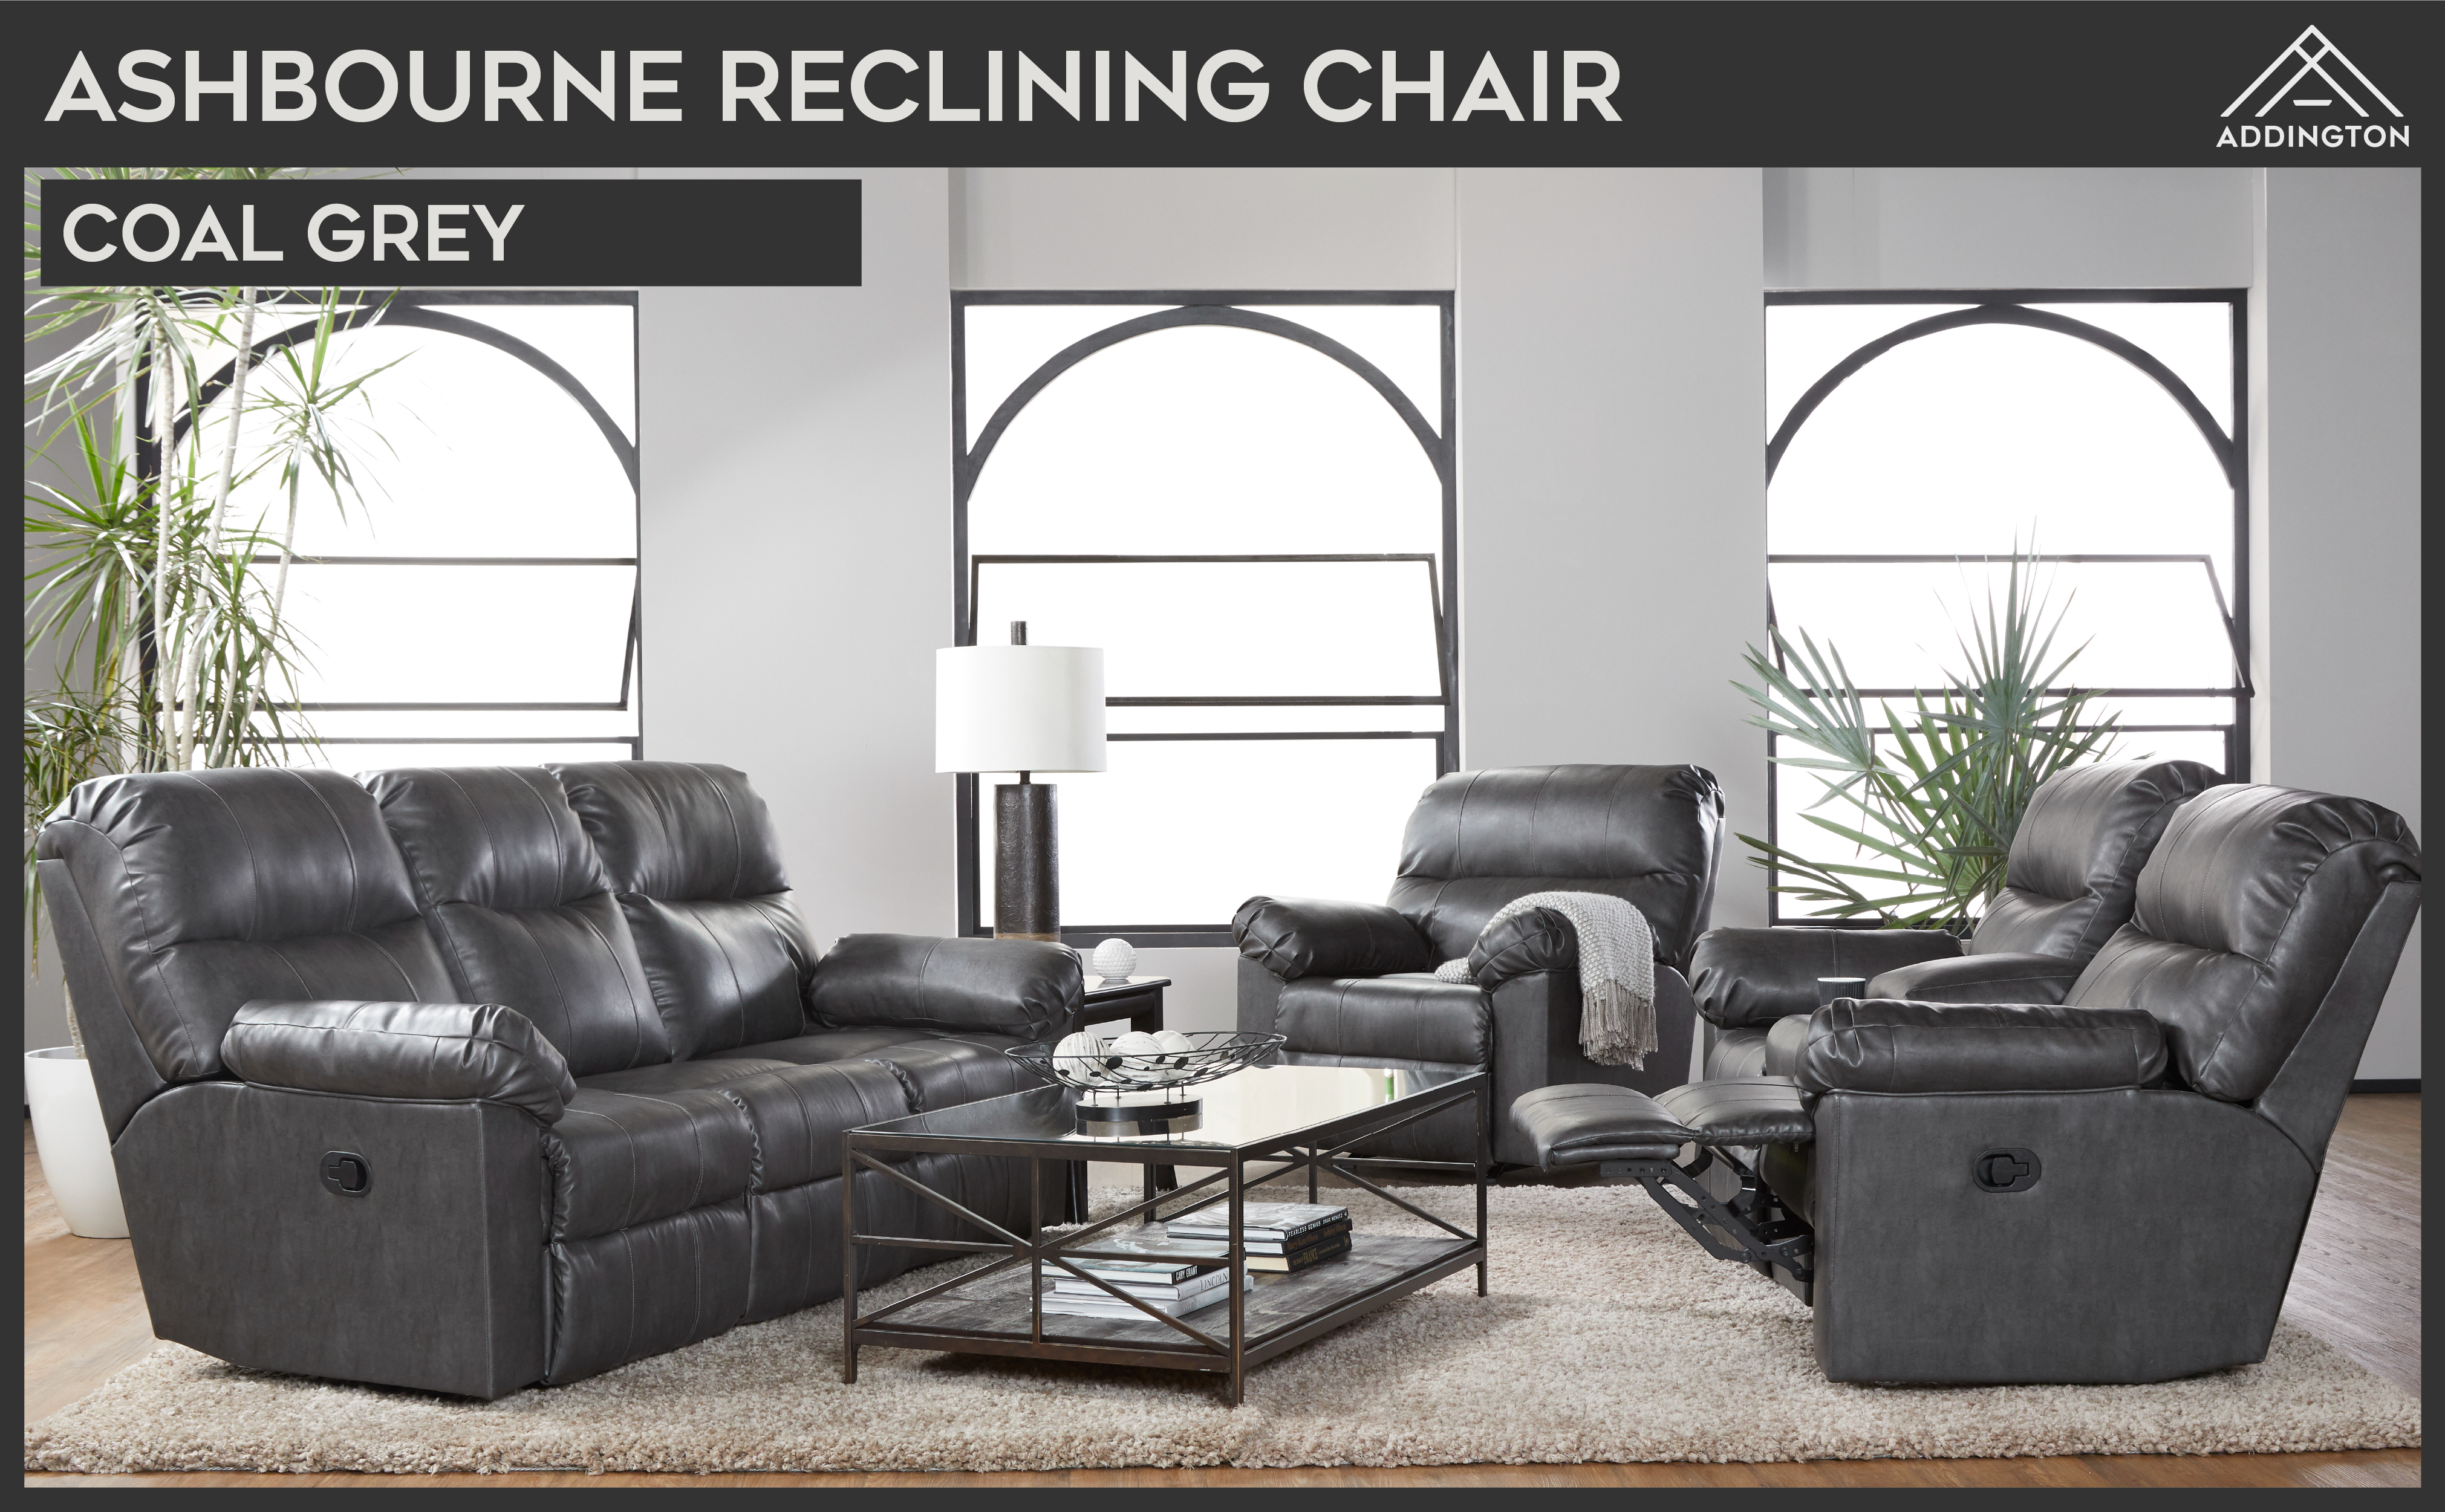 ashbourne relcining chair grey lifestyle.png__PID:5fd7efa8-a372-431c-b581-8bffc3f64c93